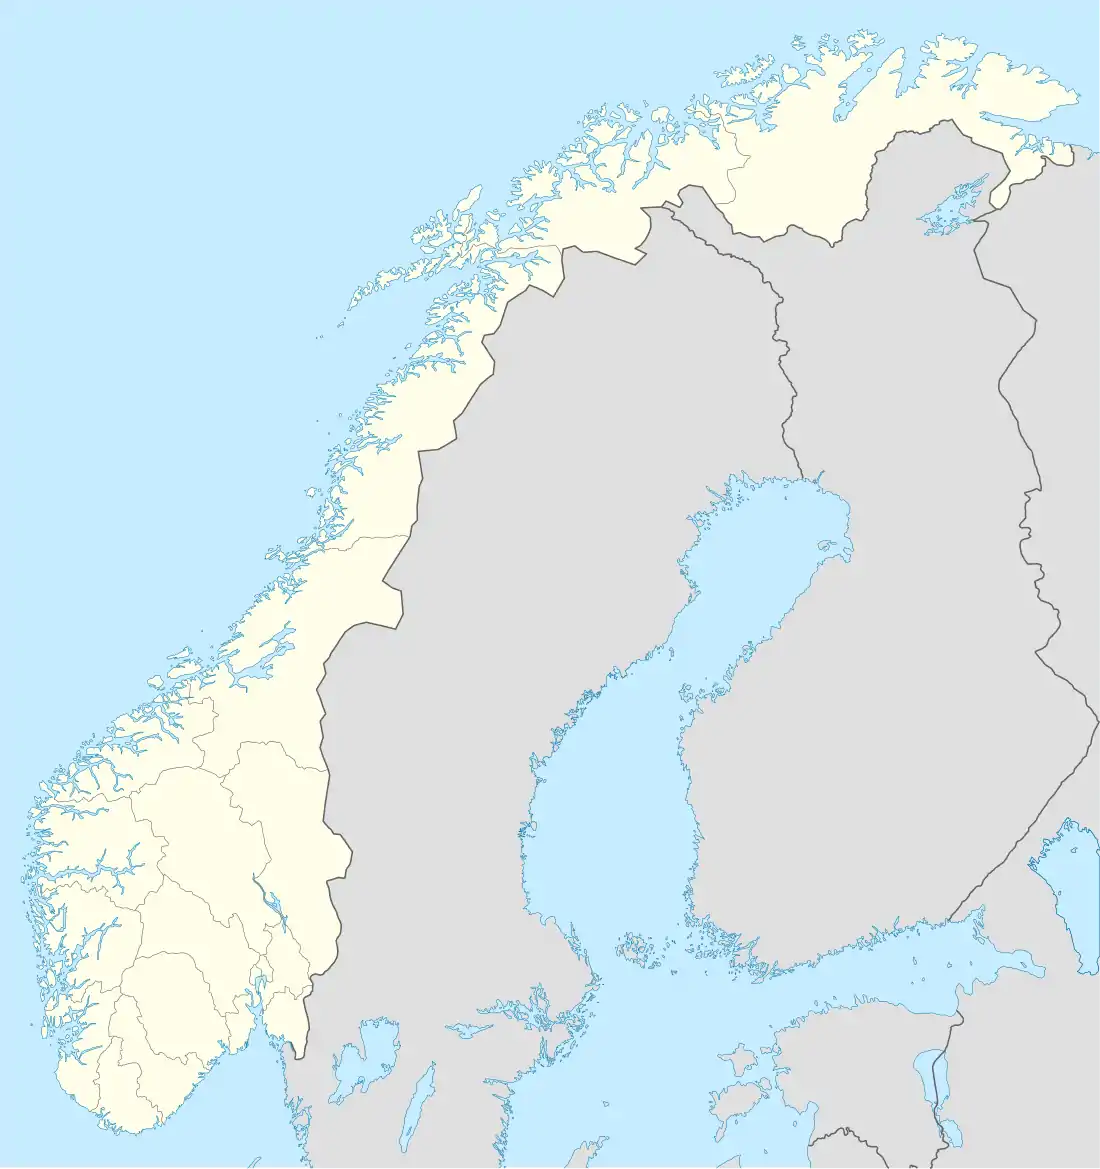 Hermansverk is located in Norway